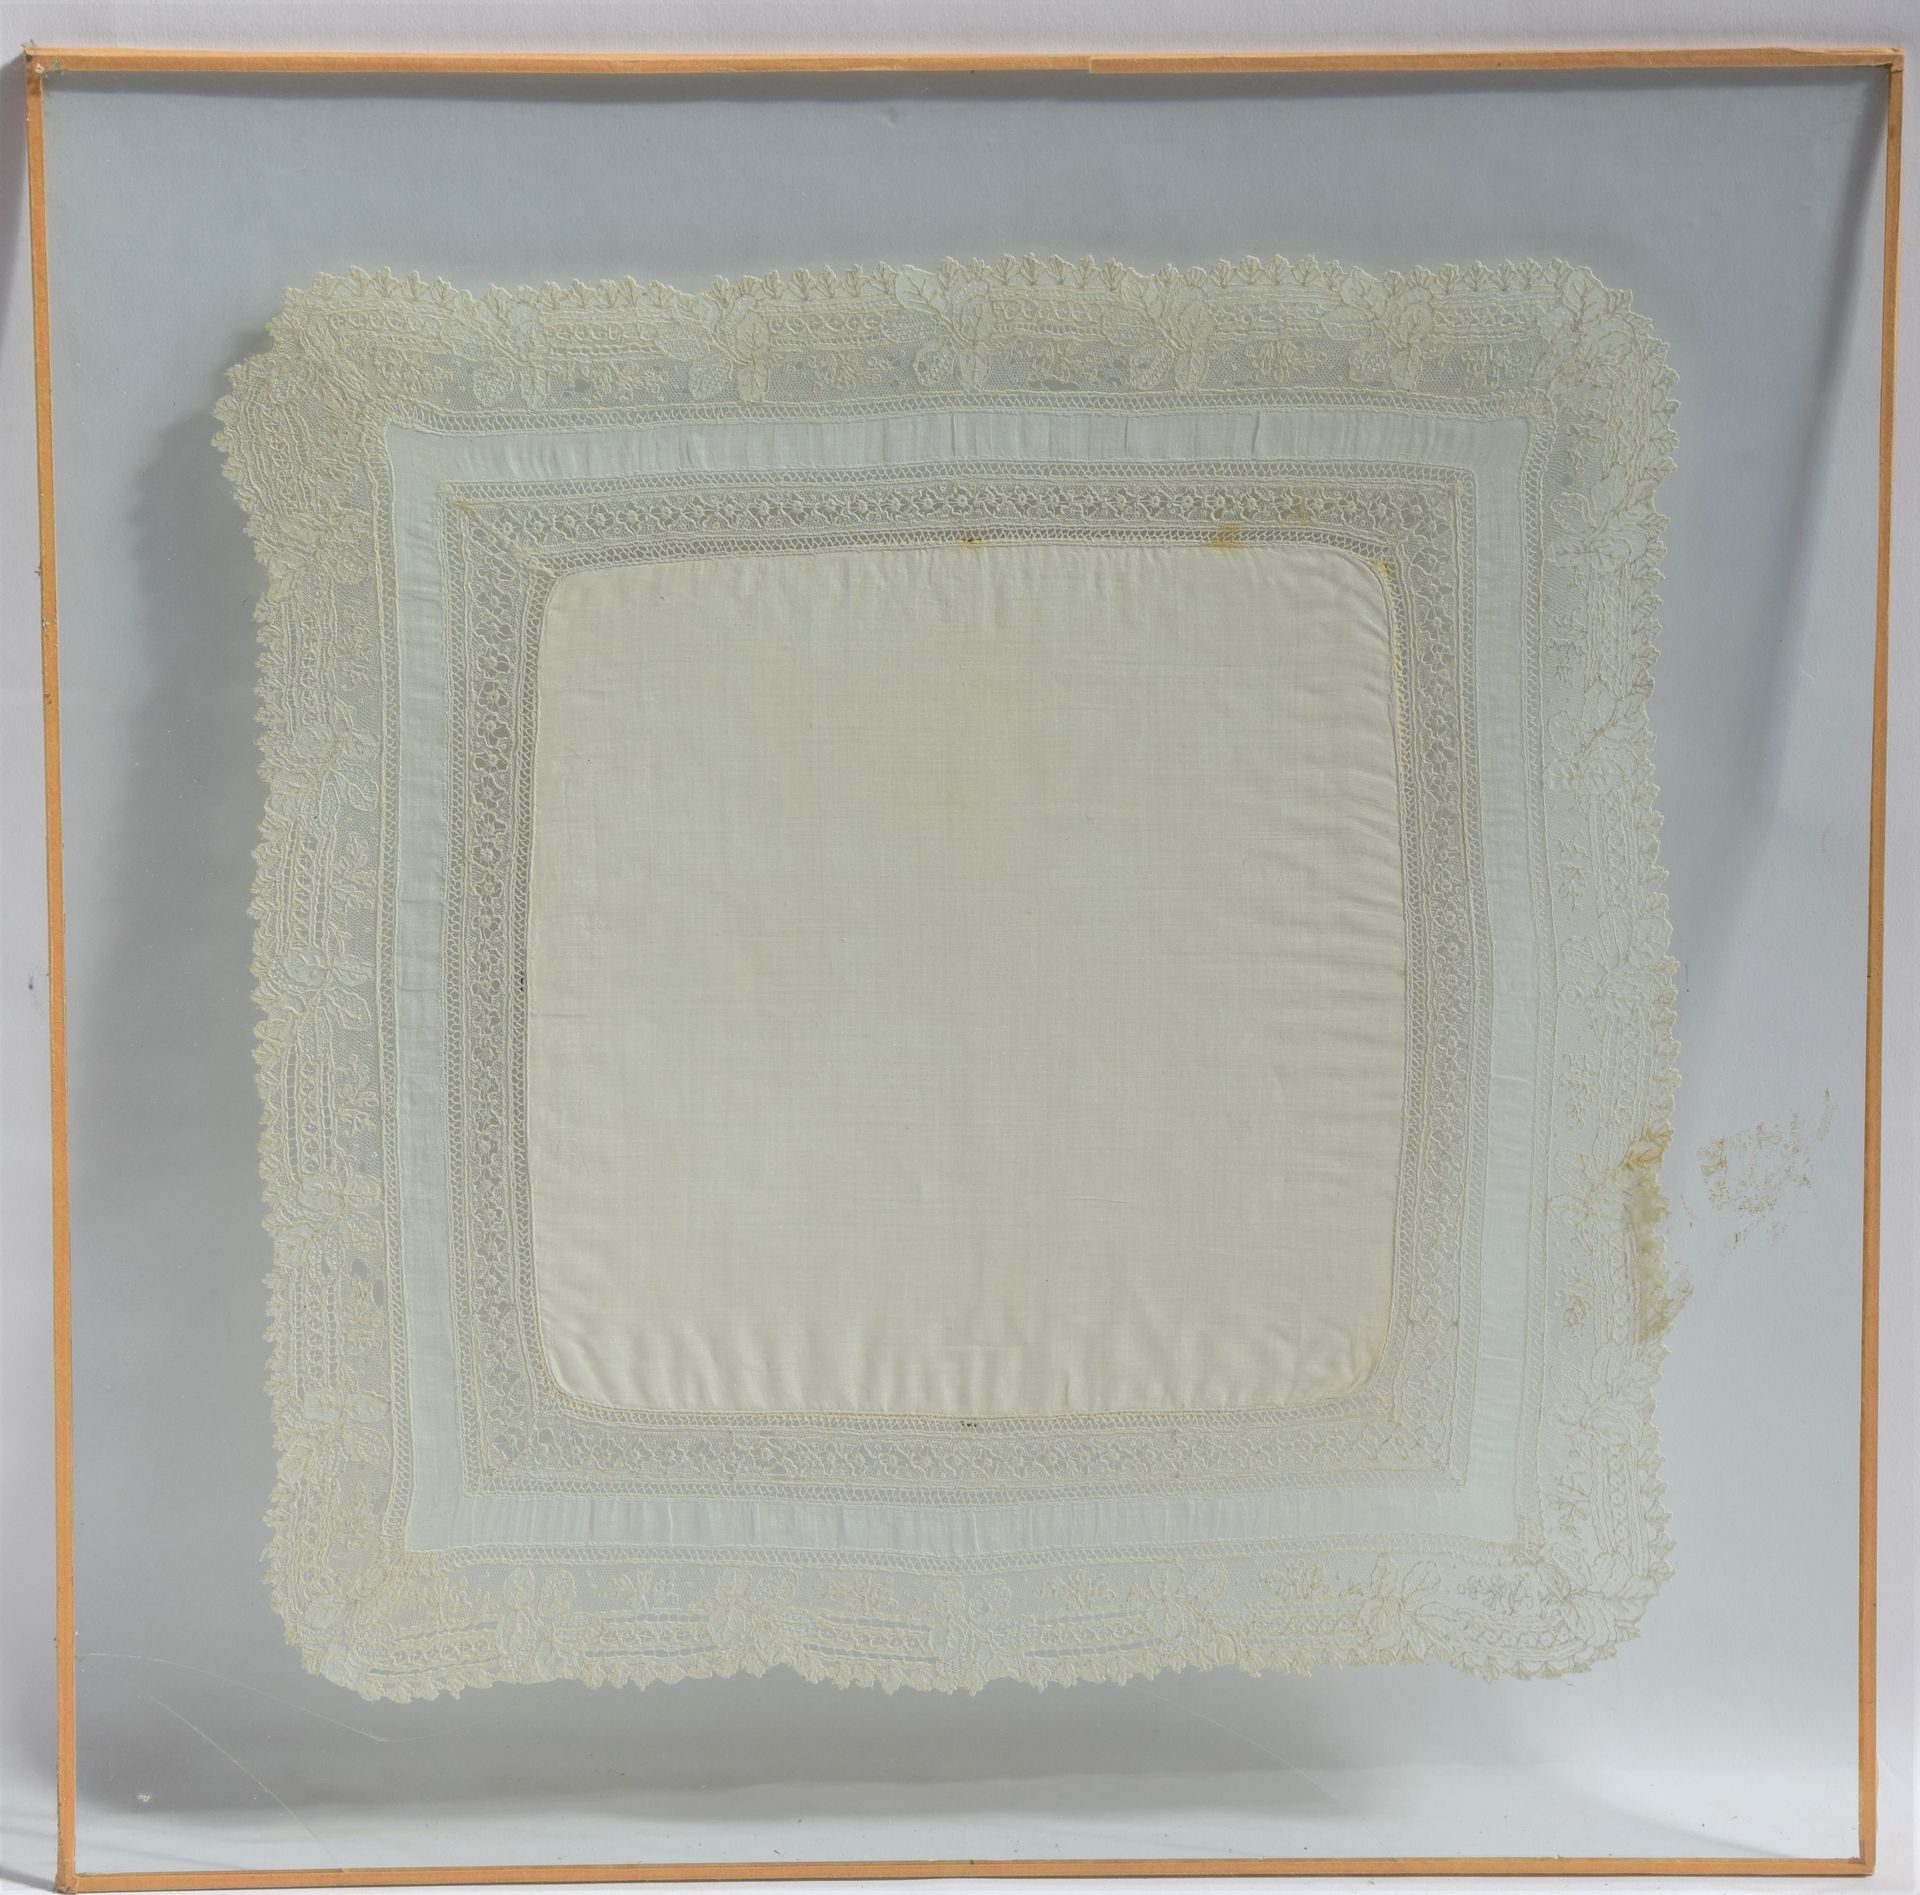 Null Besticktes Taschentuch unter Glas. Größe : 35 x 35 cm. (Unfall zum Glas)